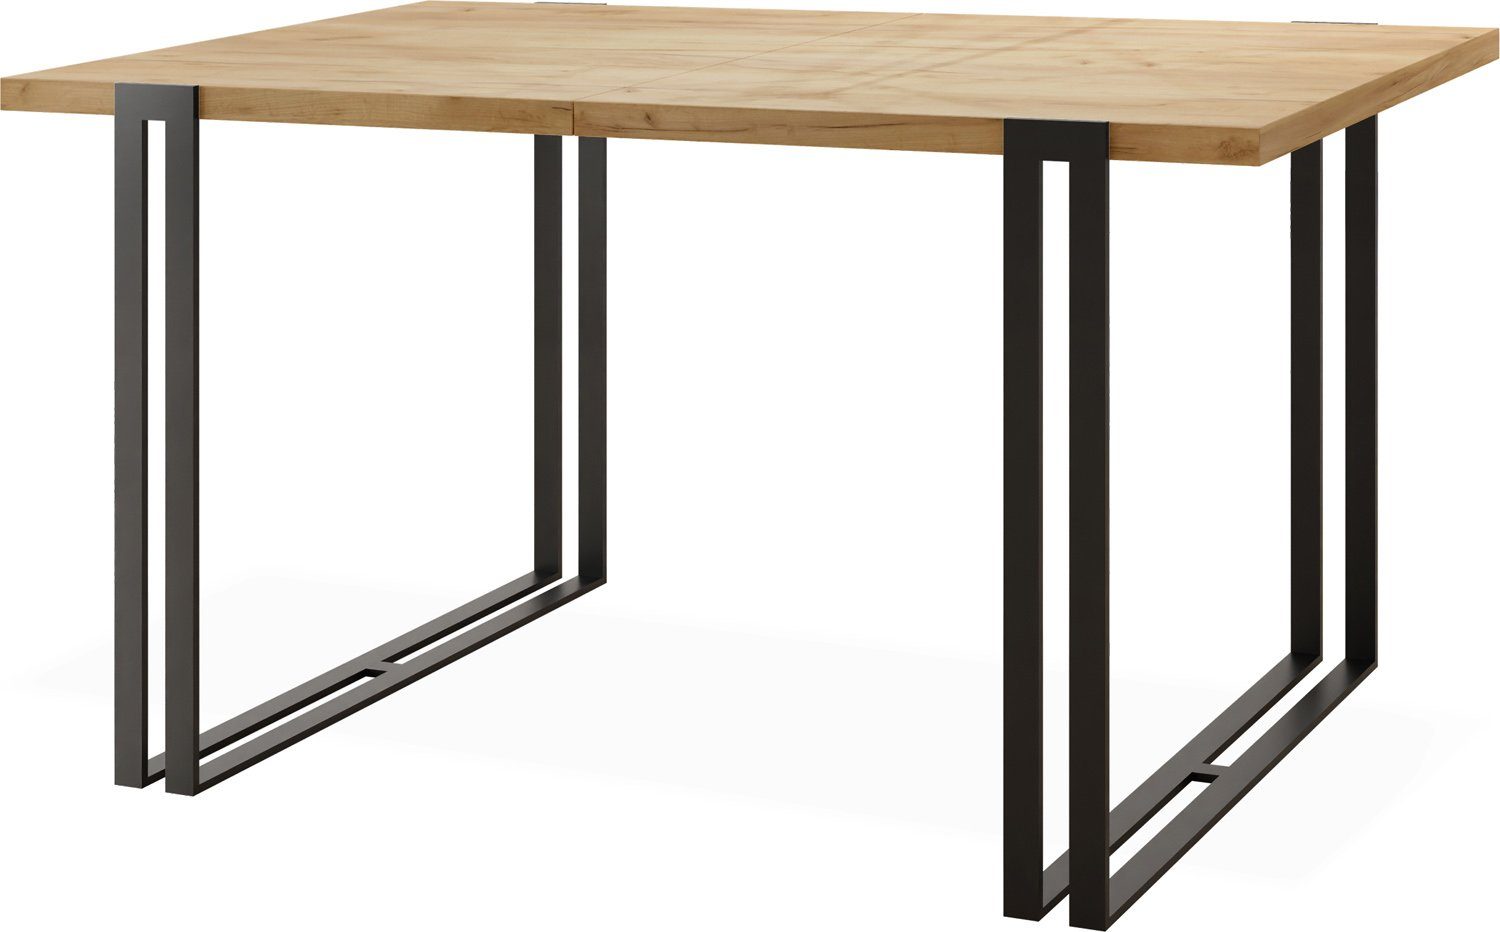 WFL GROUP Esstisch Marco, Tisch im Loft-Stil mit Schwarze Metallbeinen Craft Eiche